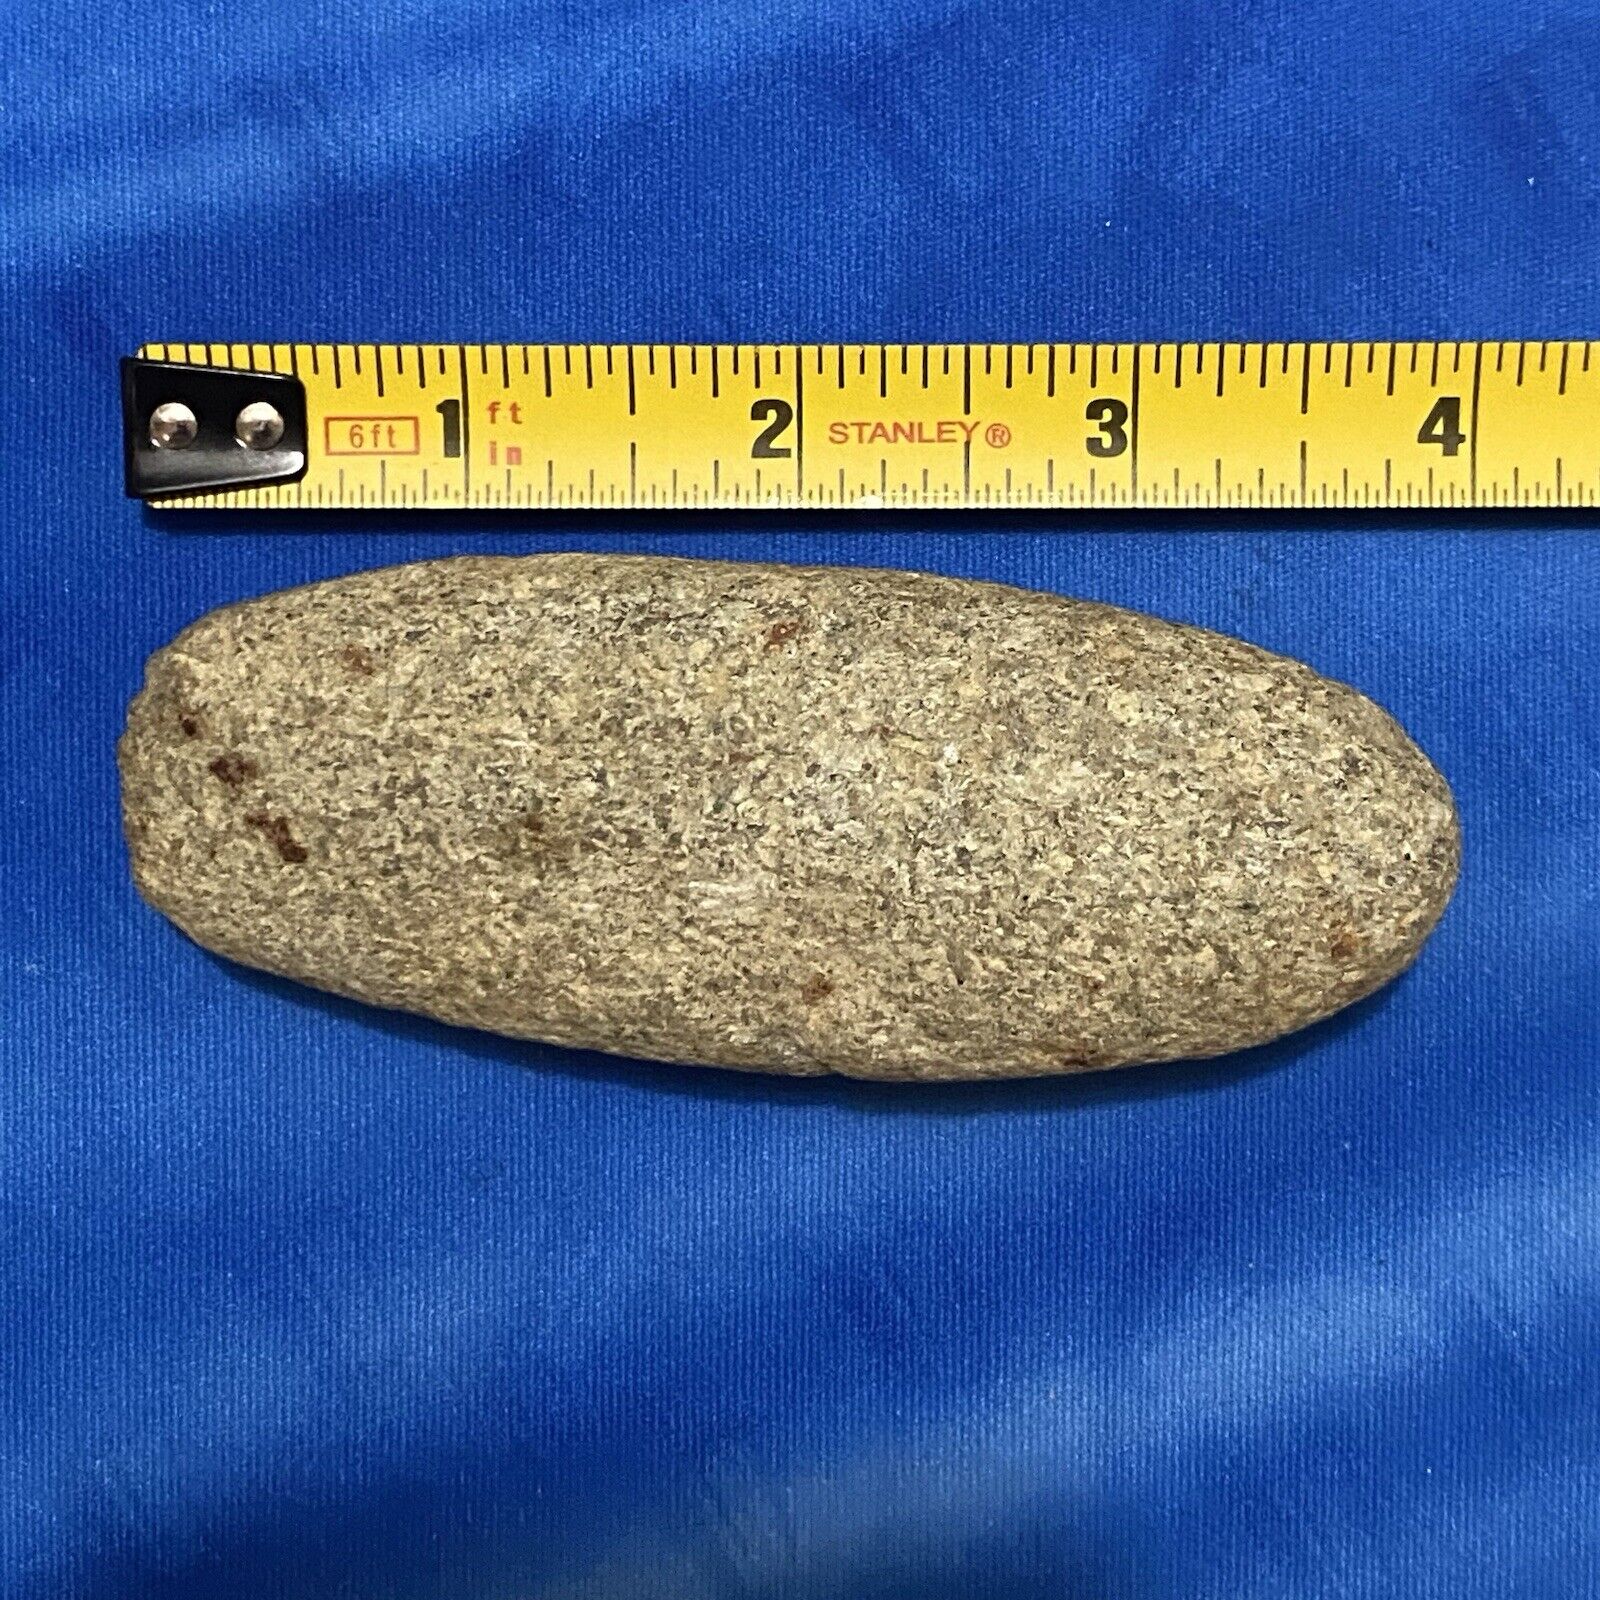 Native American Stone Celt Found In Mid North North Carolina